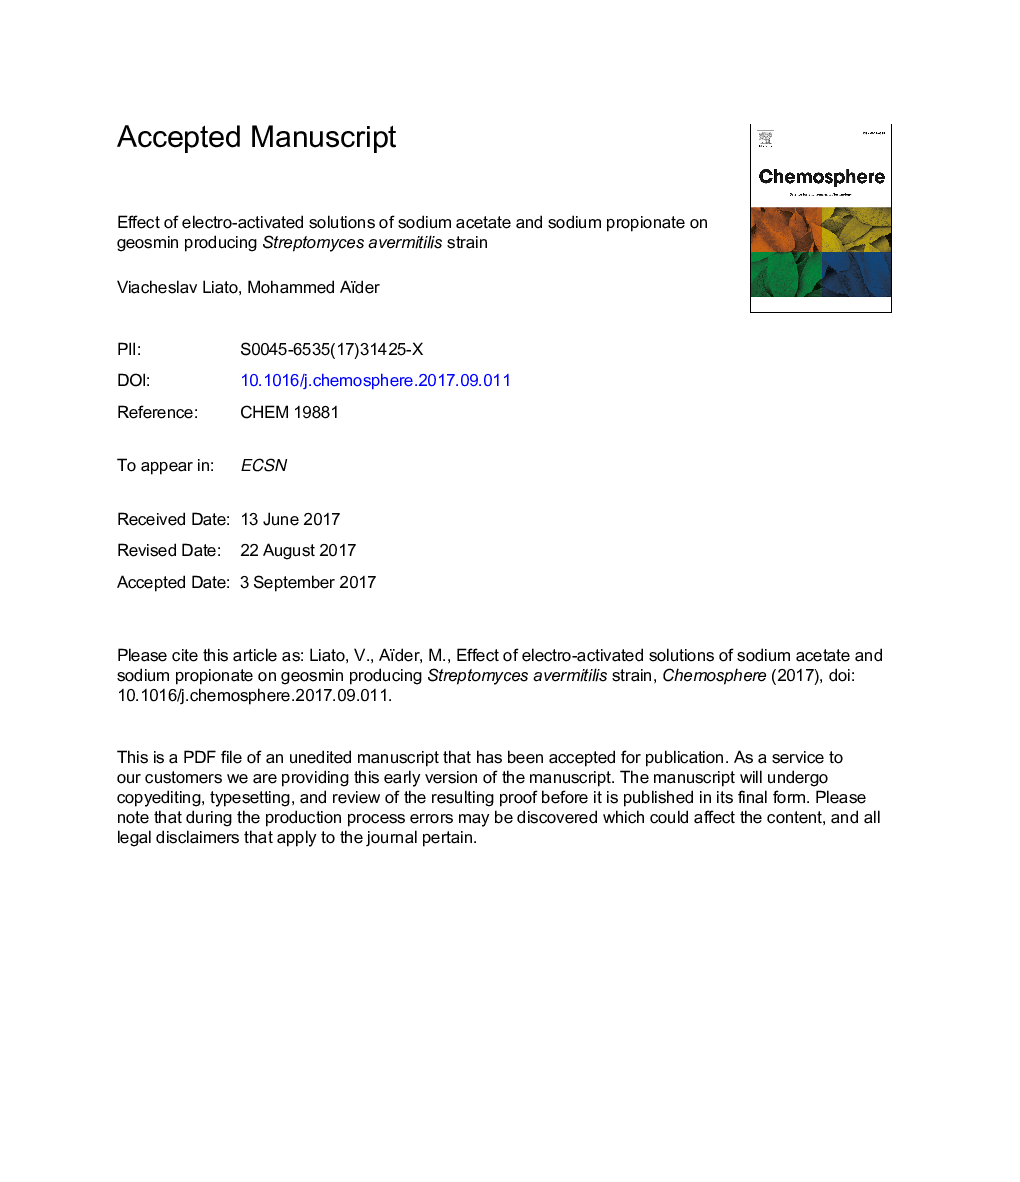 اثر محلول های الکترو فعال استات سدیم و پروپانات سدیم بر ژئوشیمیایی تولید استرپتومایسس اورمتیلیس 